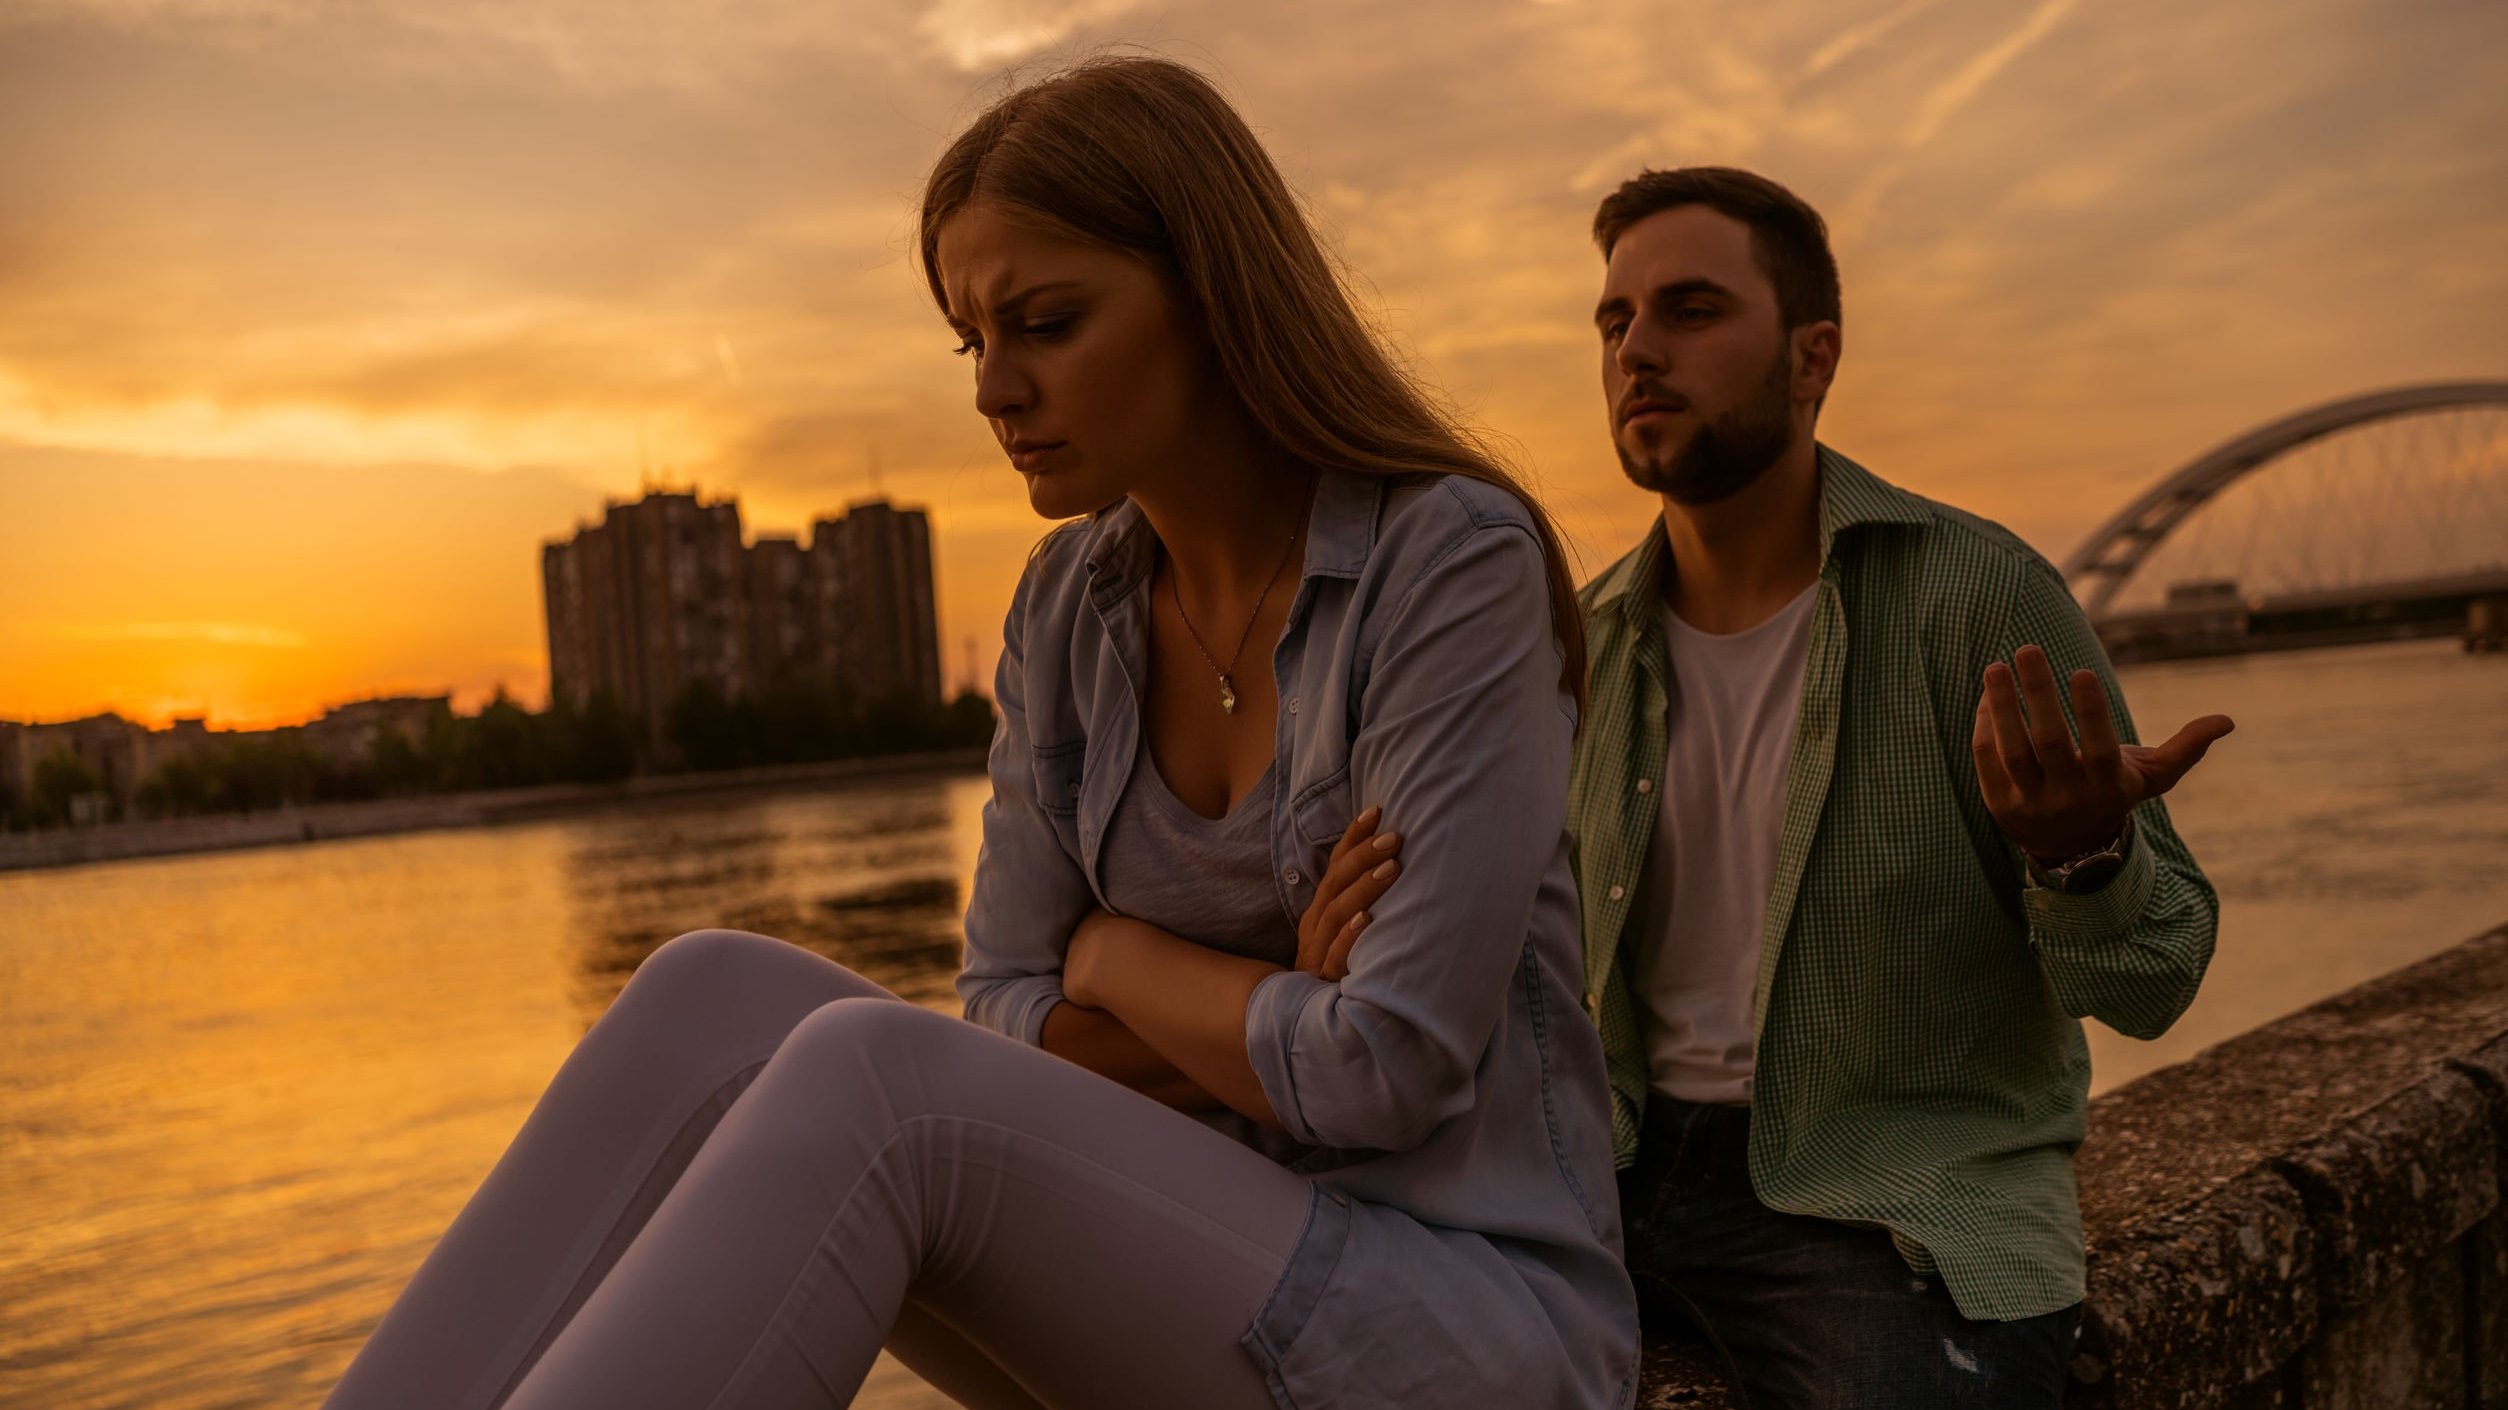 Homem e mulher brancos sentados numa mureta ao lado de um rio. Mulher com braços cruzados e expressão triste, homem com braços abertos e expressão de súplica.